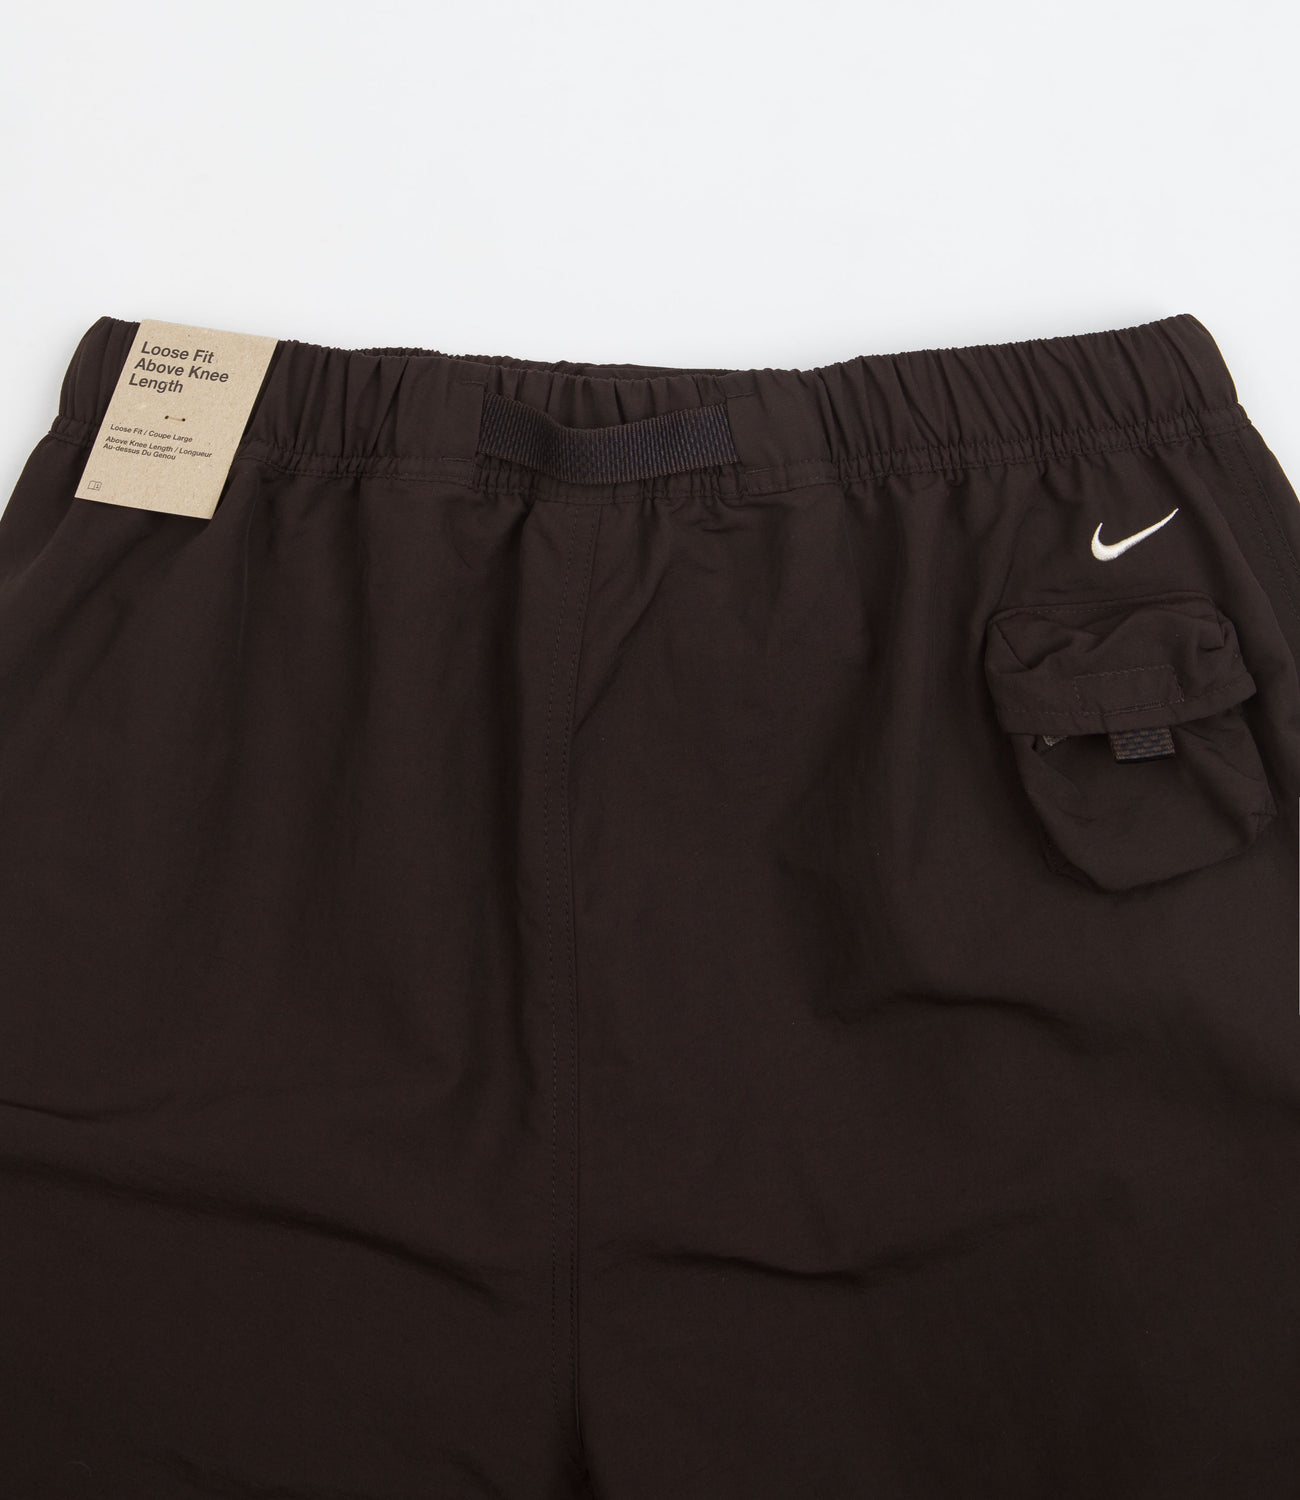 Nike ACG Snowgrass Cargo Shorts - Velvet Brown / Black / Sanddrift